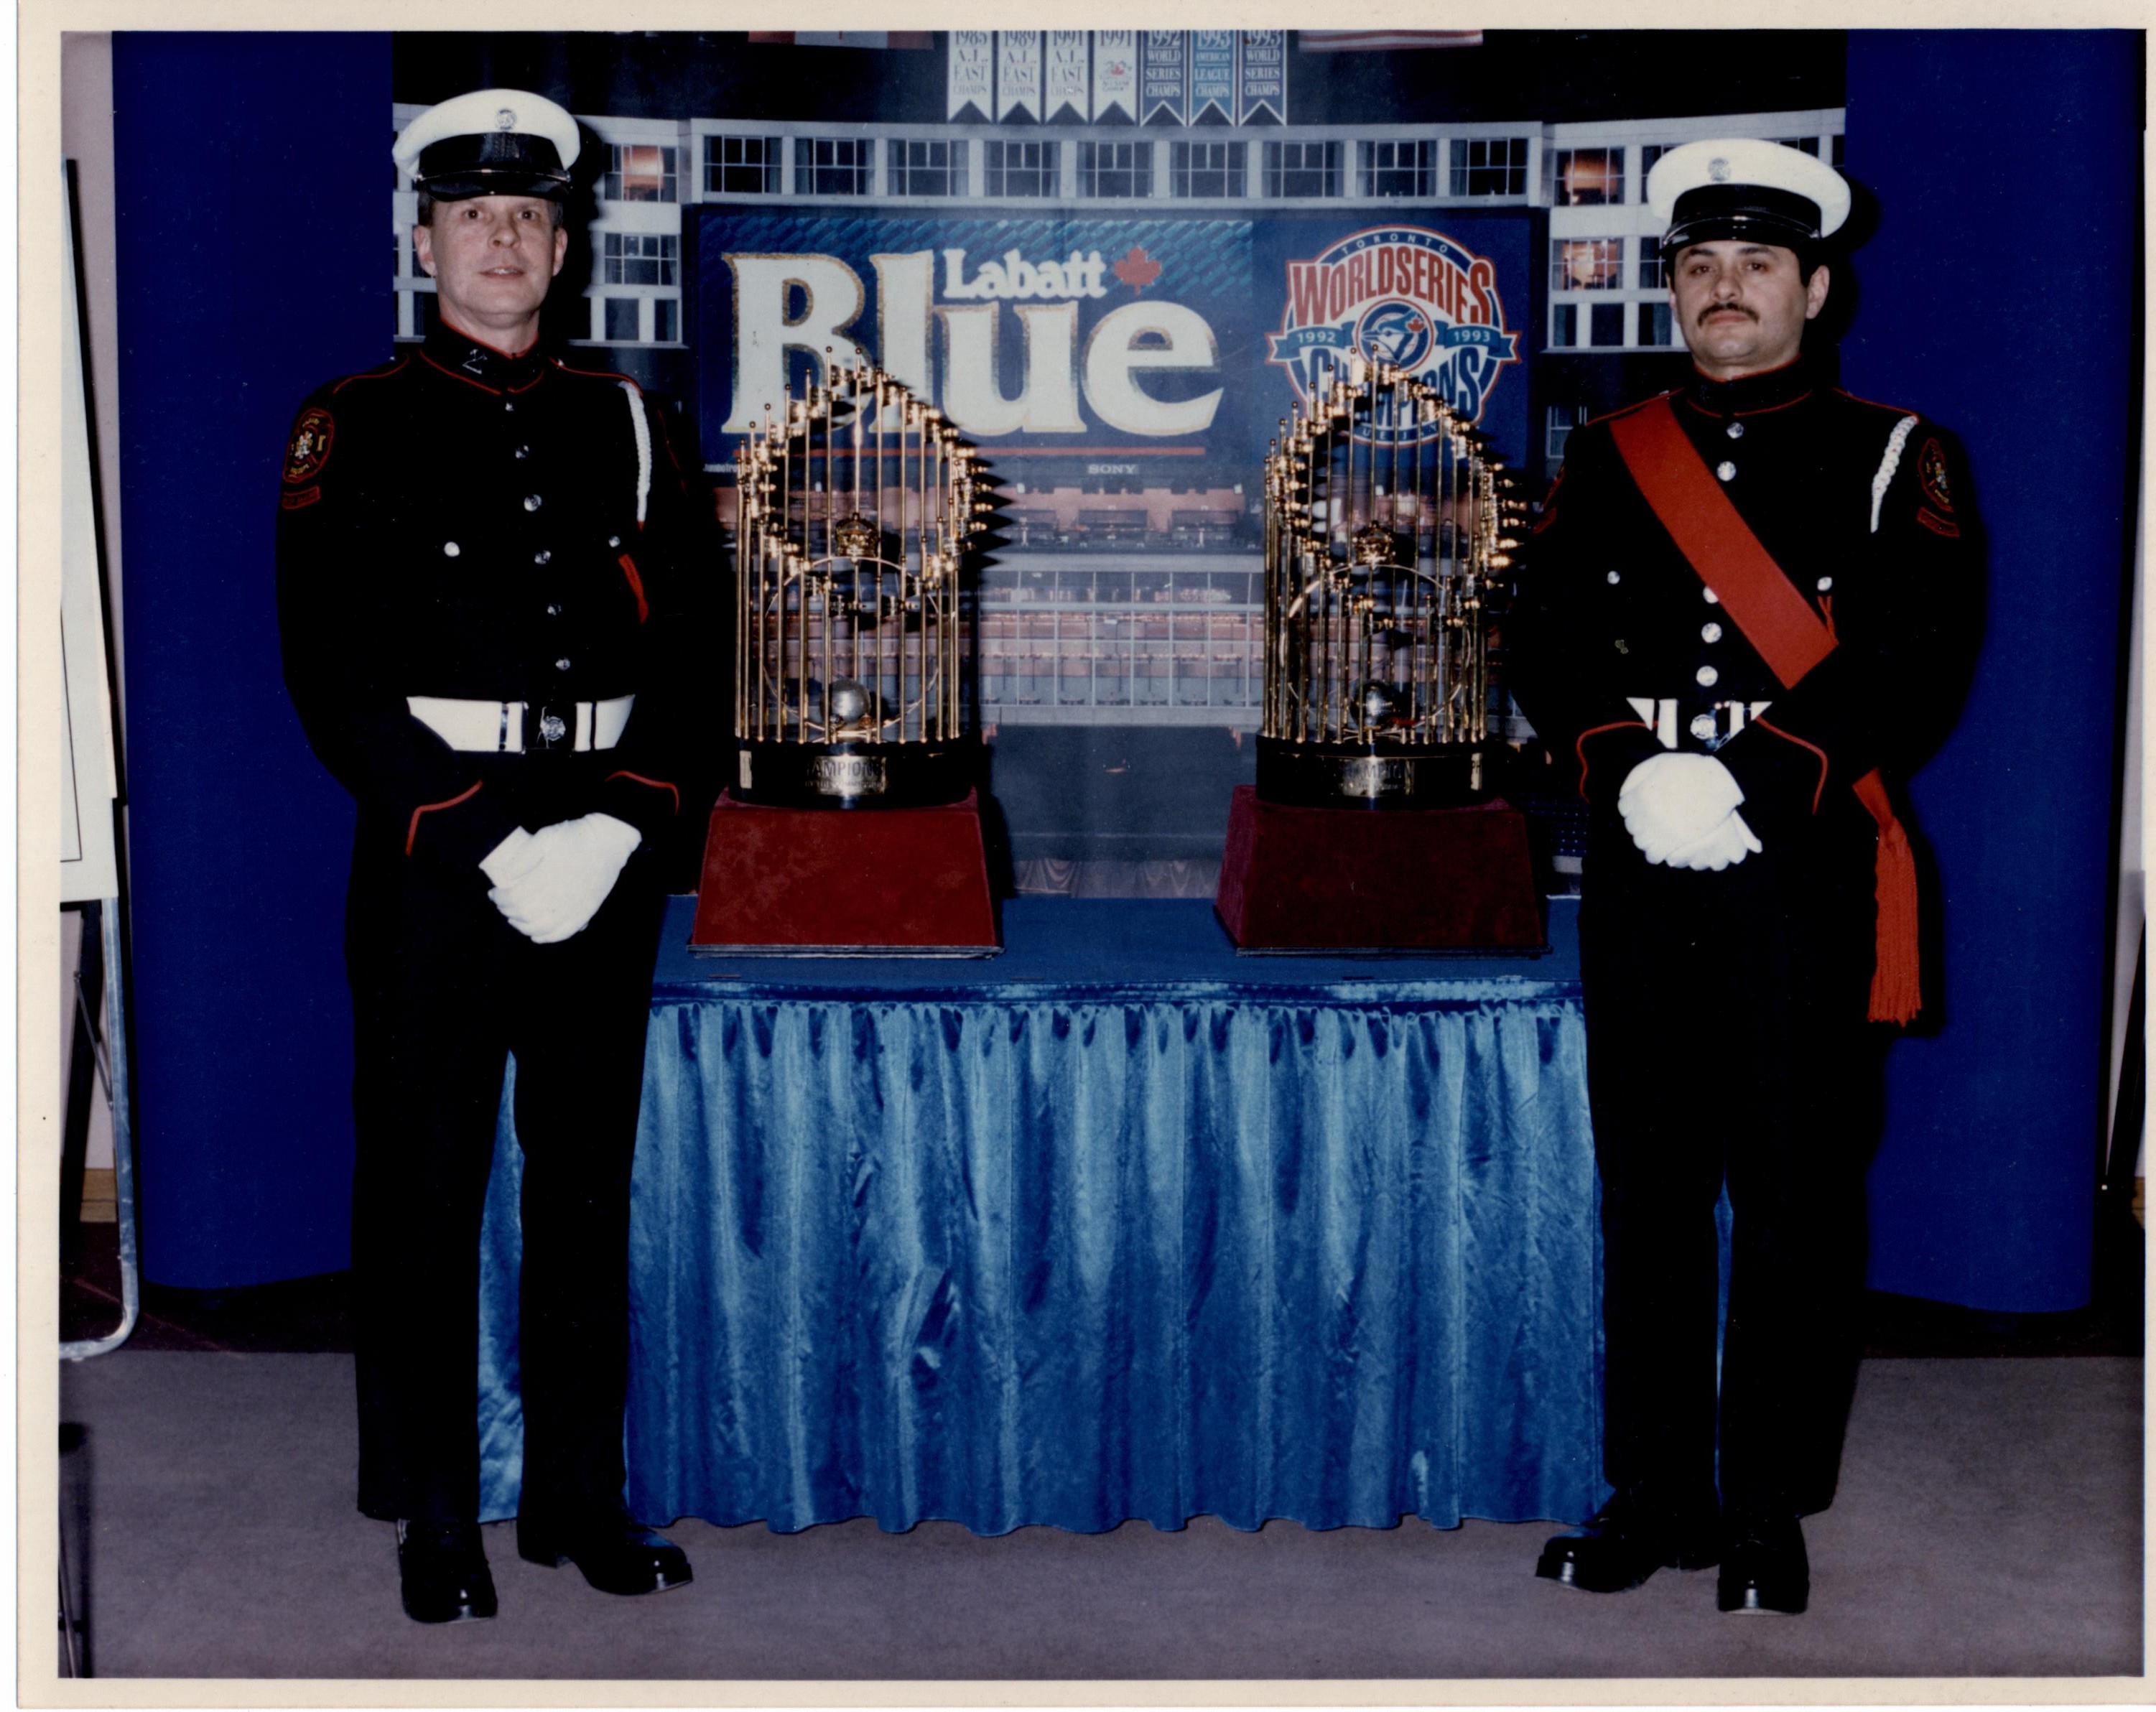 Rick Choppe et Shannon Pennington, membres de la garde d’honneur, avec les trophées de la Série mondiale, 1993, tous deux en uniforme de grande tenue Les trophées sont placés sur une table drapée de bleu, avec arrière-plan bleu.